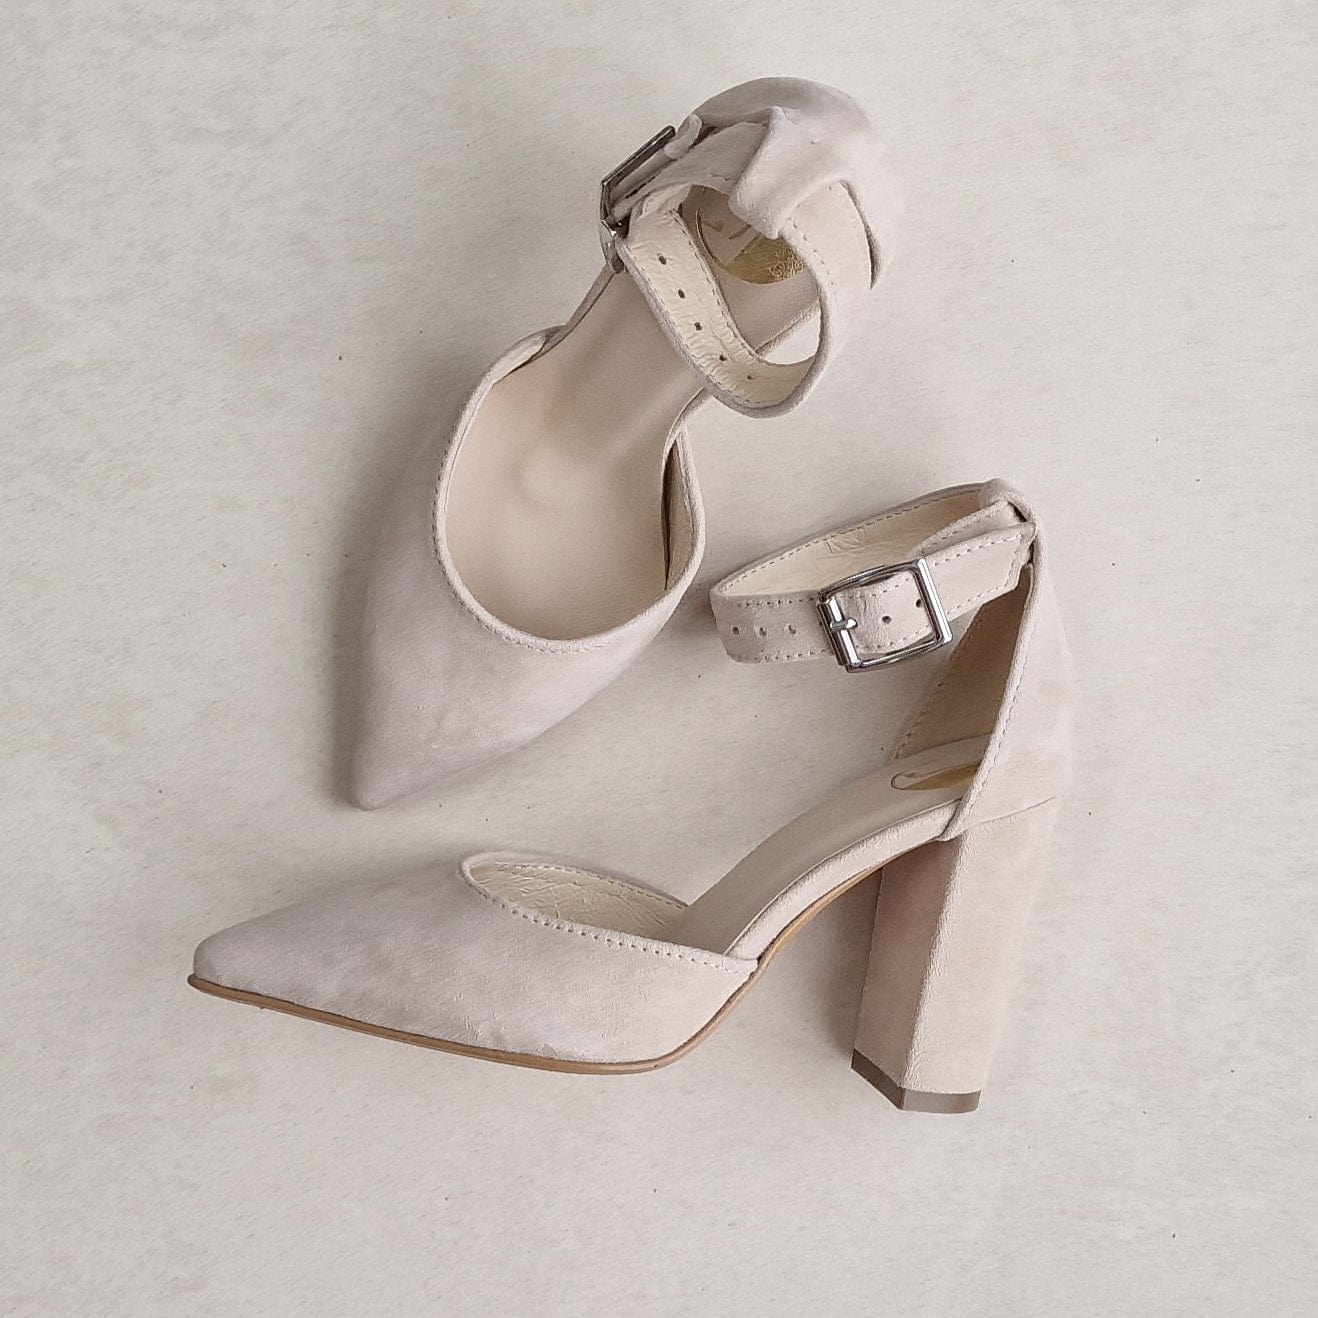 Ivory suede petite wedding heels